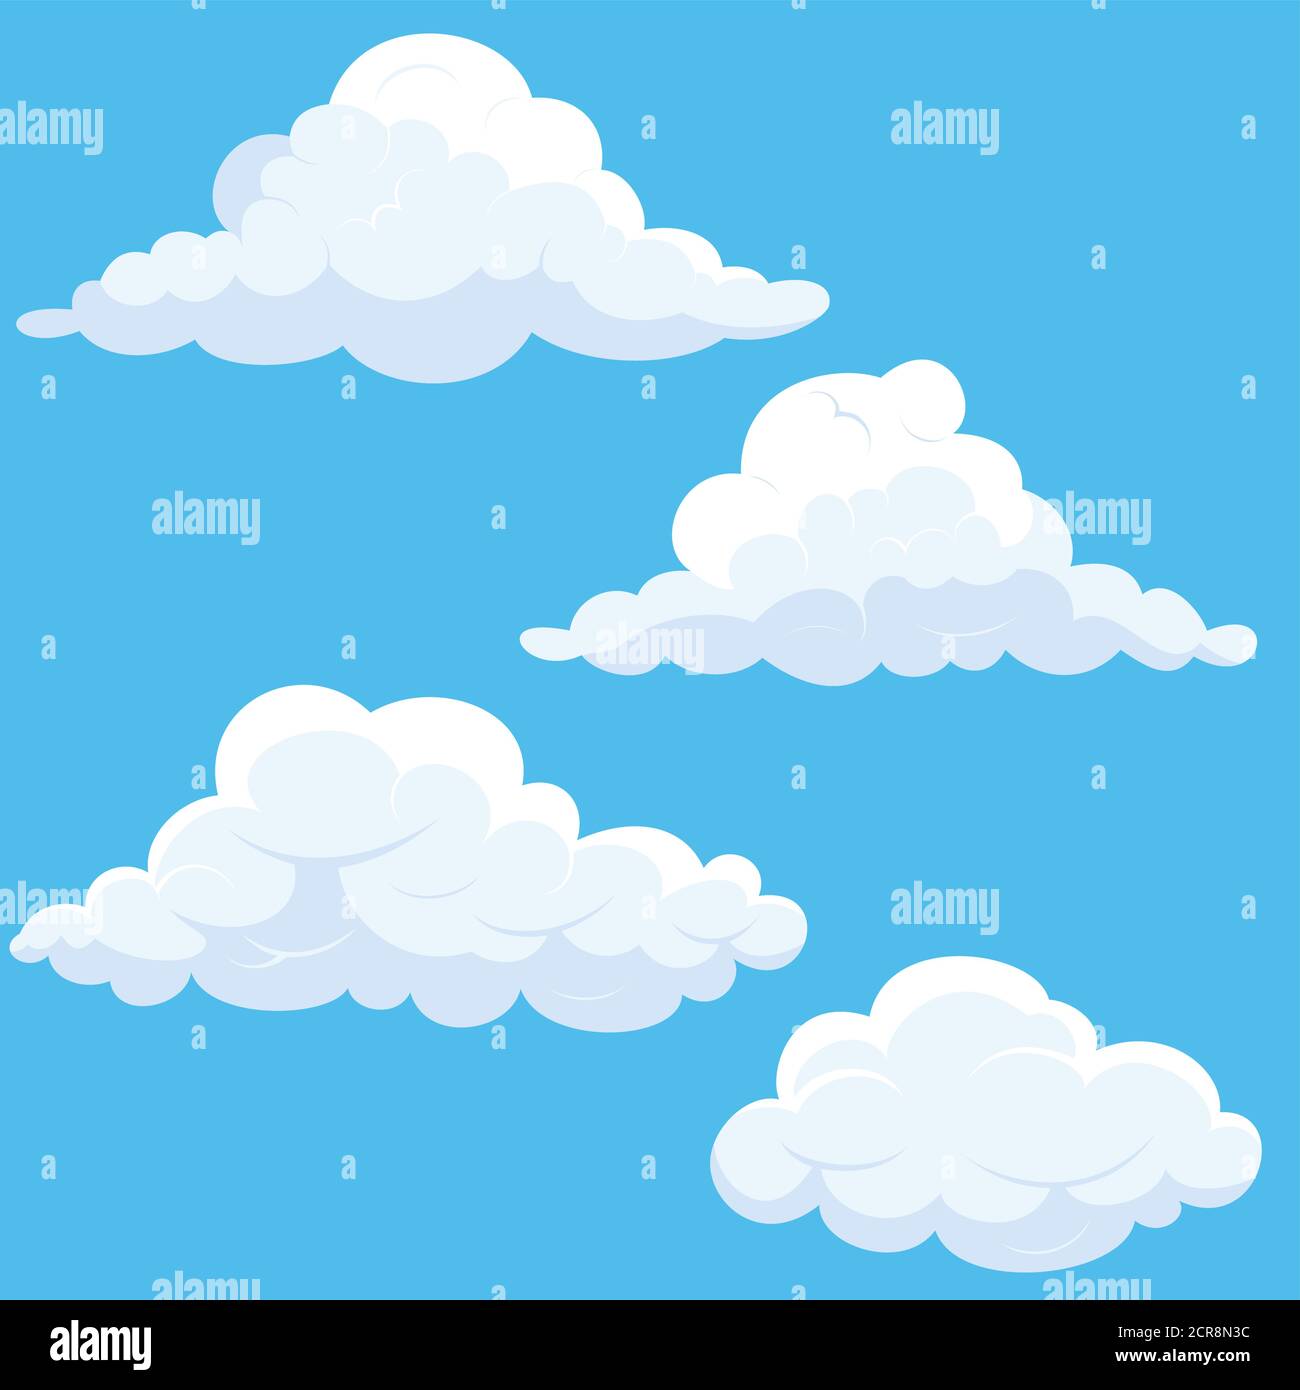 Ilustración de nubes blancas de dibujos animados. Cielo azul con diferentes formas de nubes. Ilustración del Vector